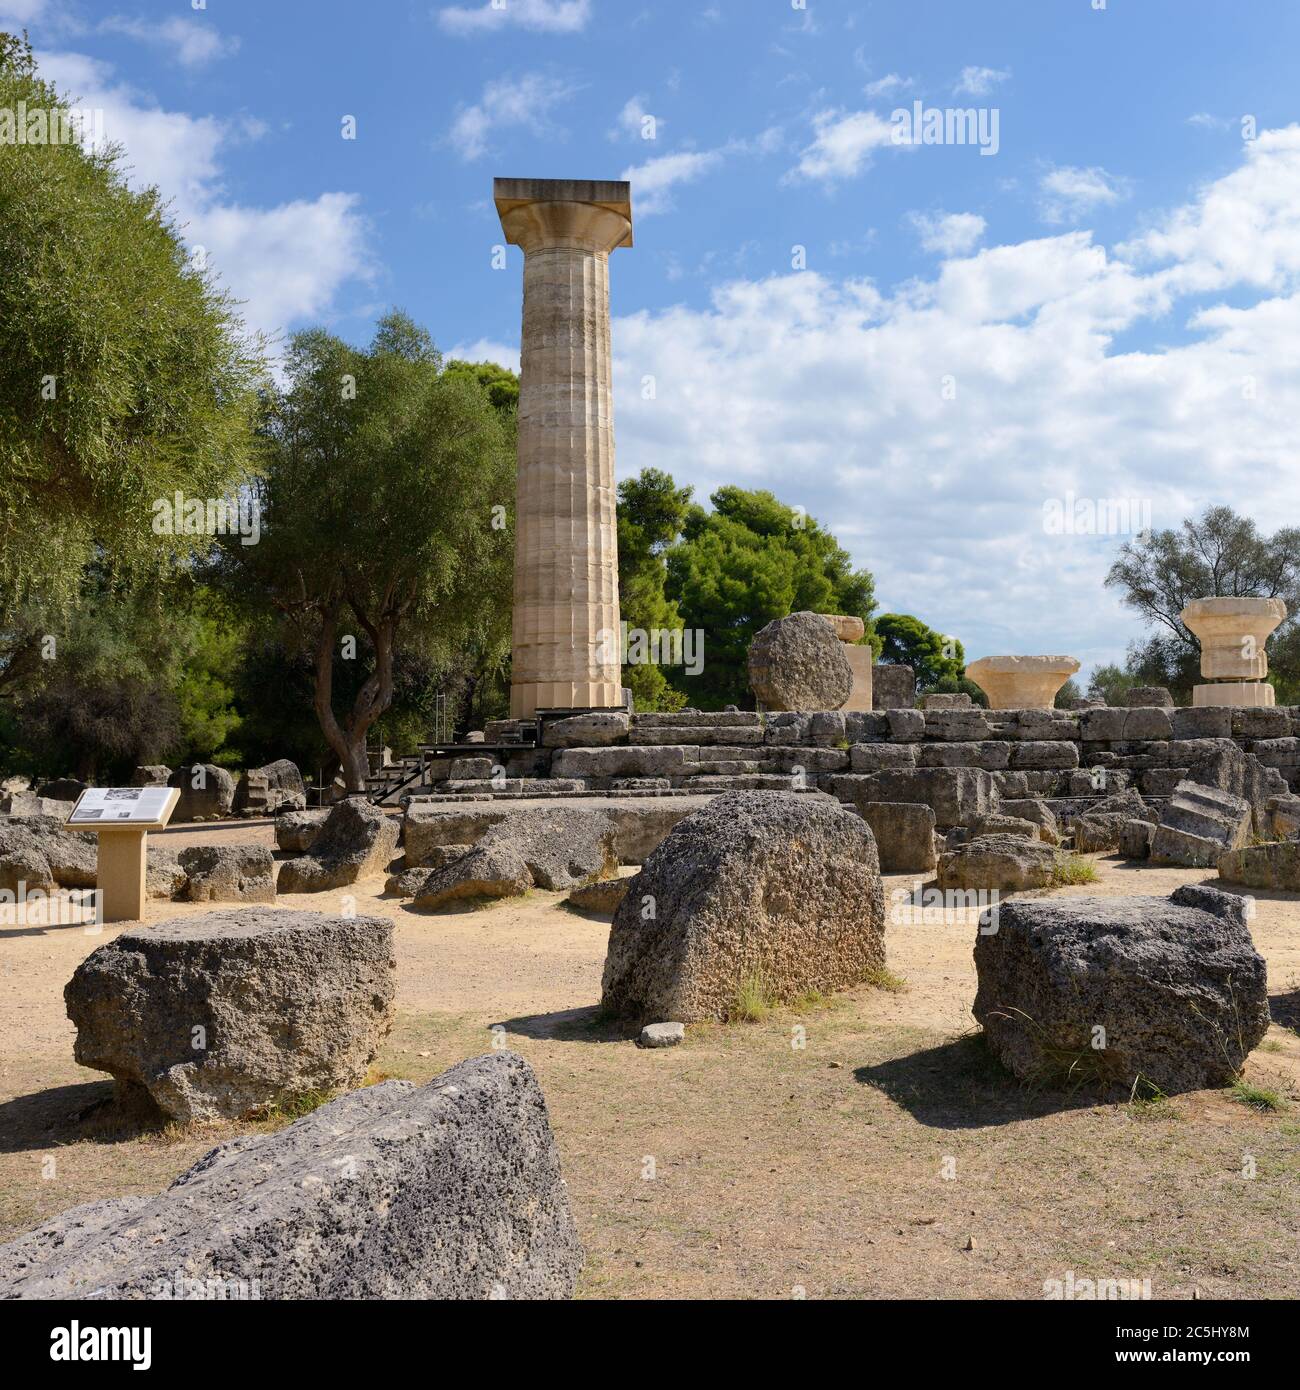 GRÈCE, OLYMPIE - 5 OCT: Ruines antiques montrées le 5 Oct 2013 à Olympie. Lieu de naissance des Jeux olympiques, aujourd'hui site du patrimoine mondial de l'UNESCO et lieu où Banque D'Images